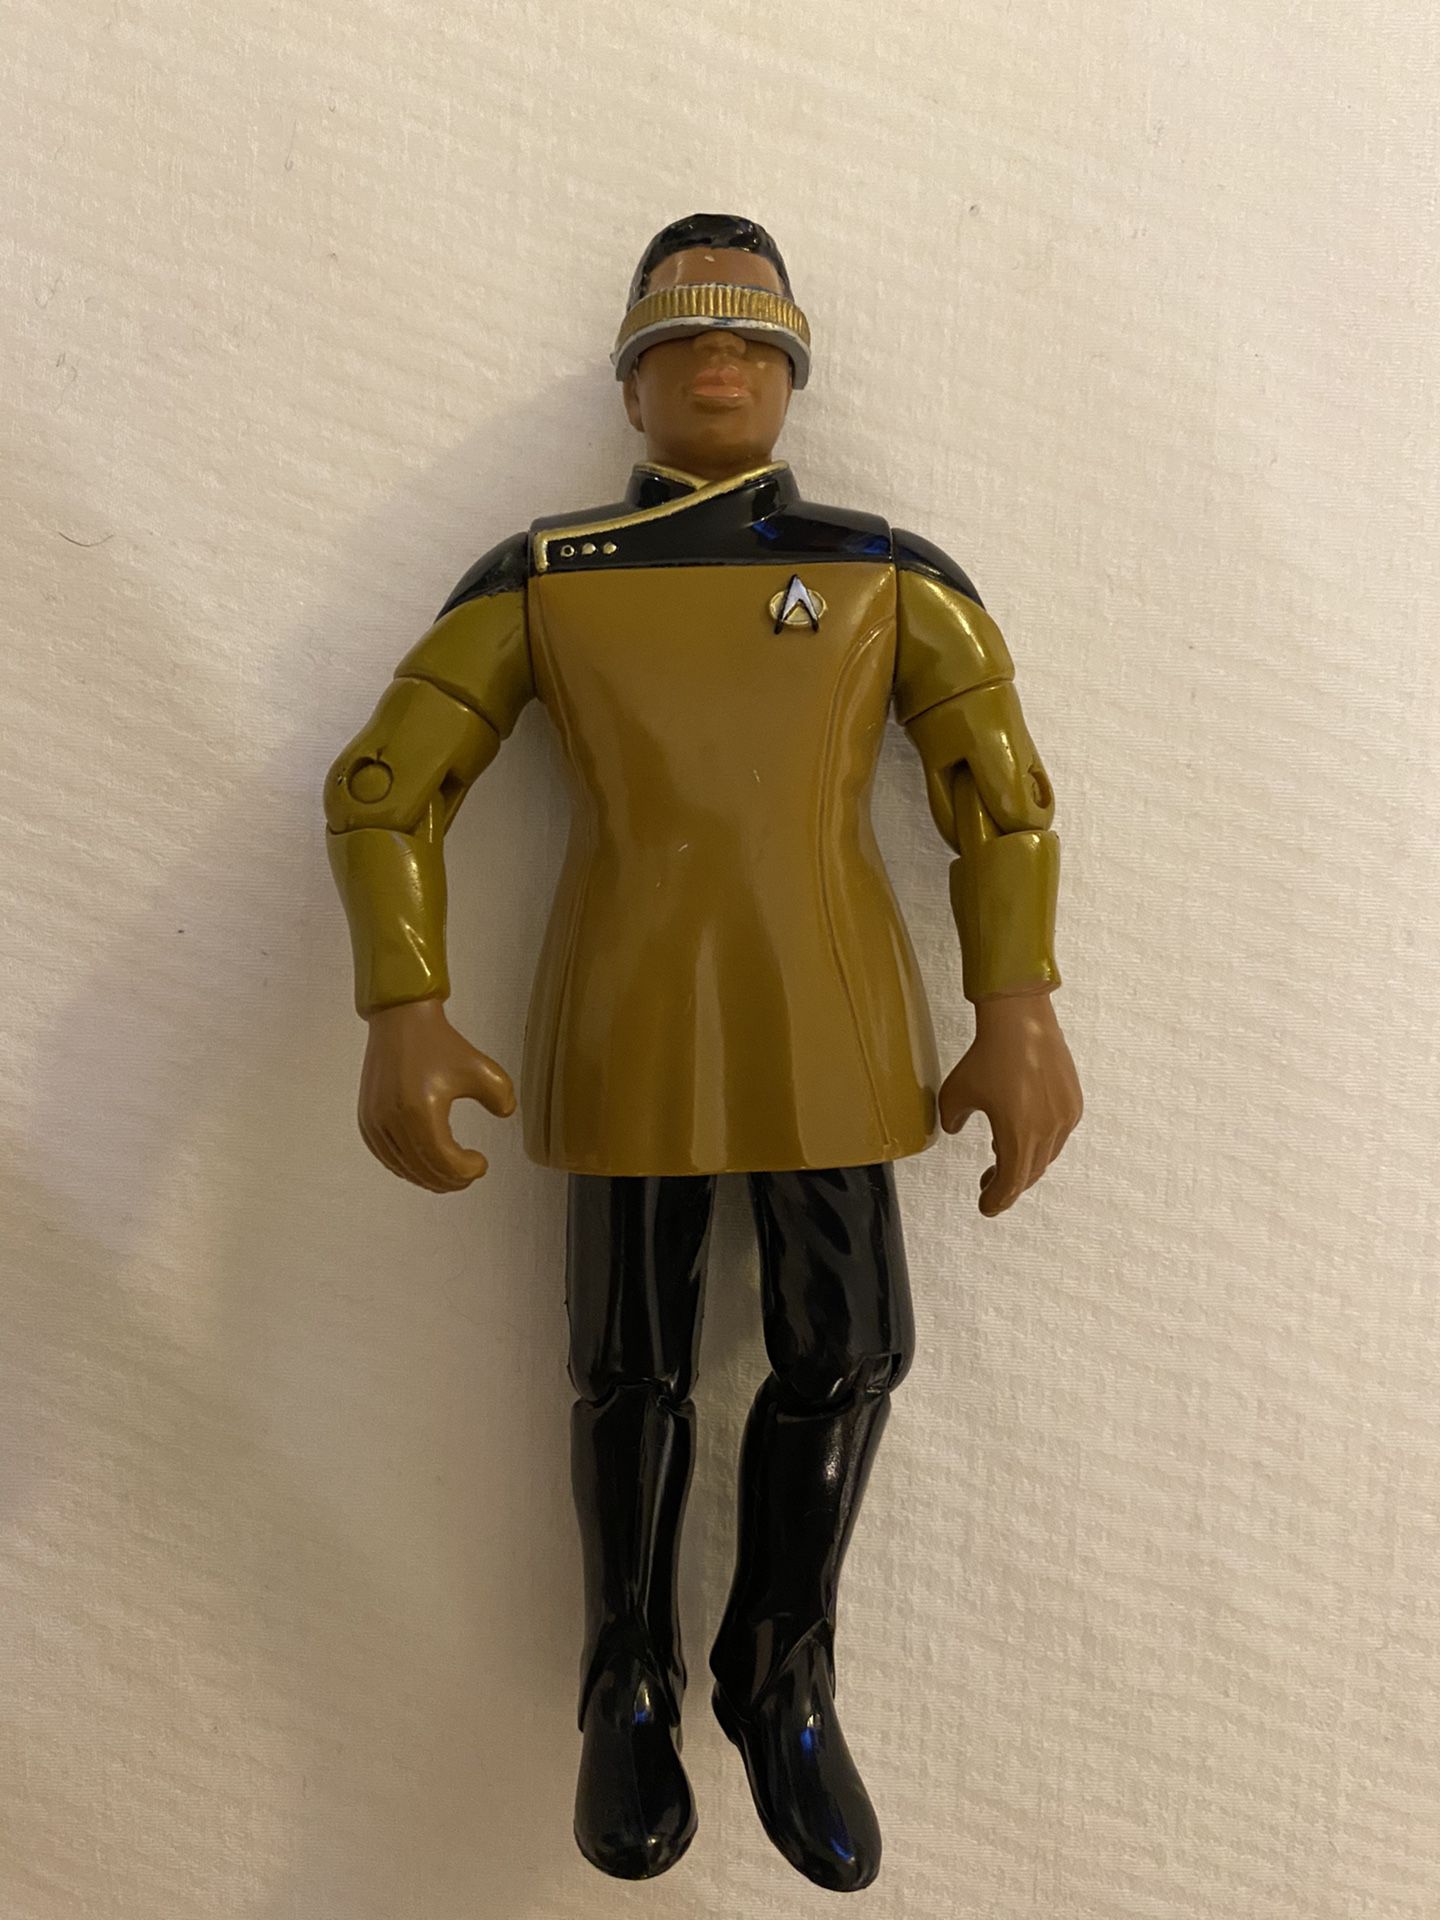 1993 Lt Commander Geordi Laforge 4.5” Action Figure Star Trek Playmates Toys